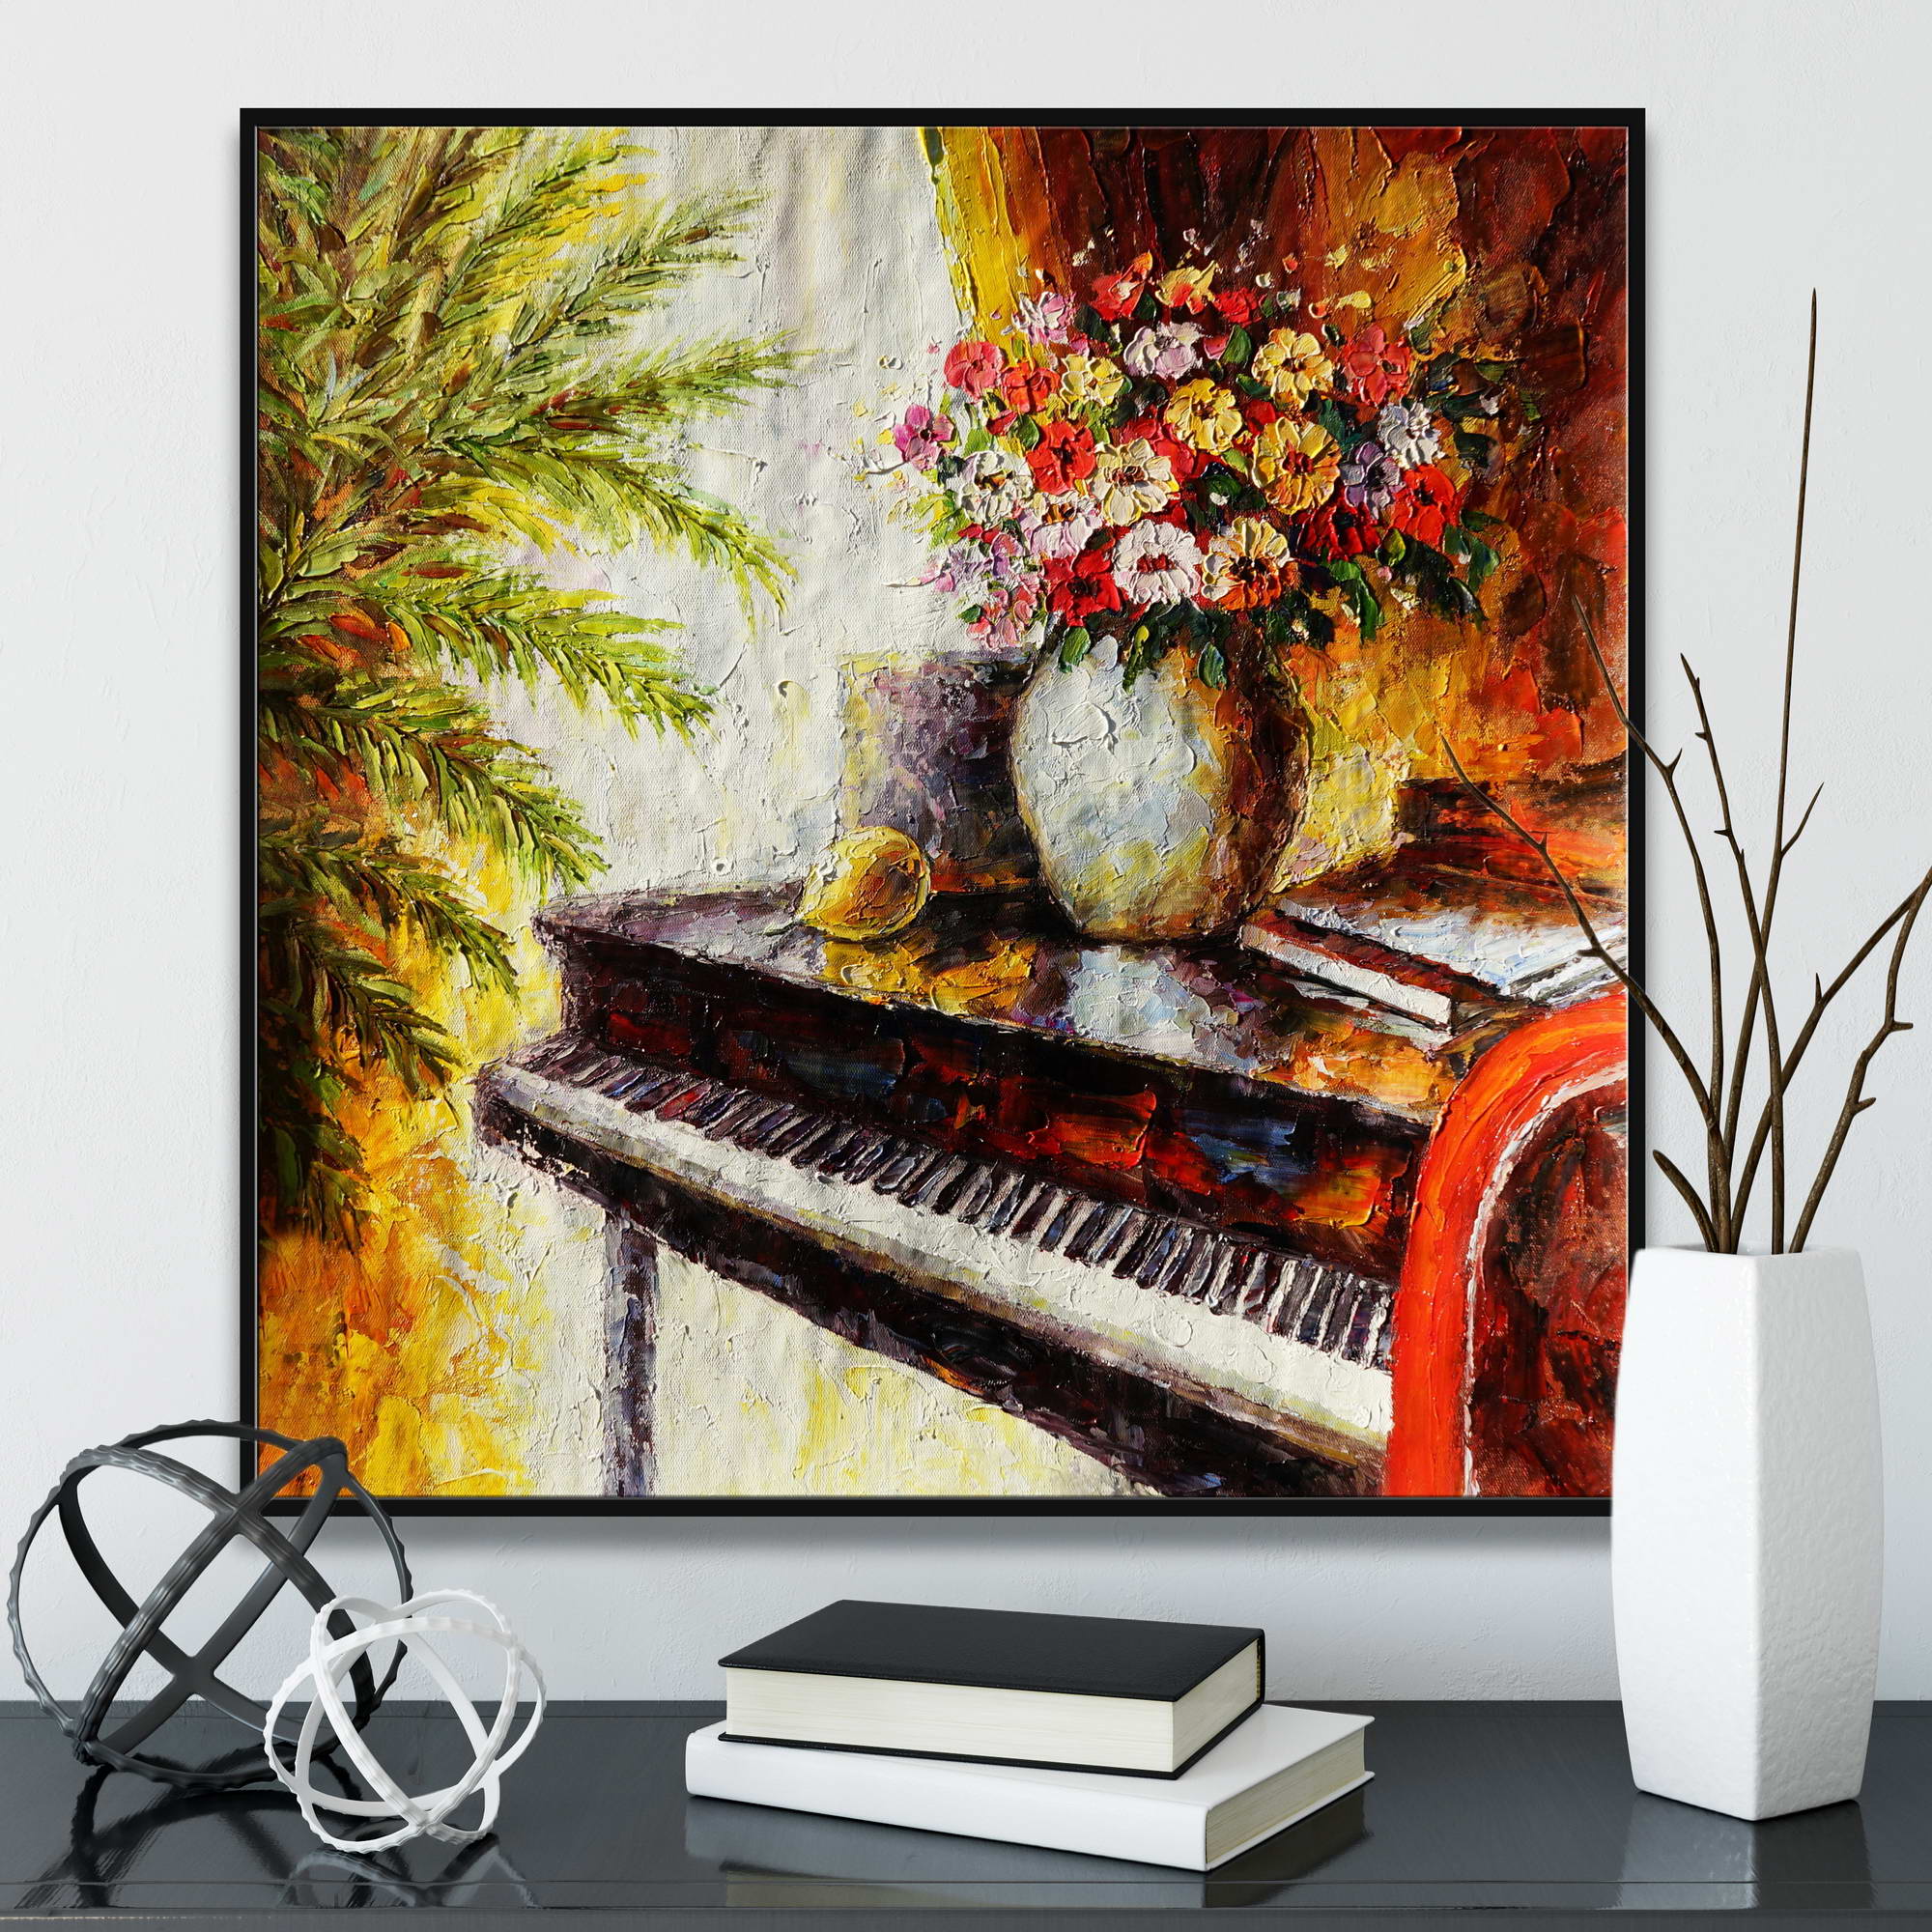 Dipinto di fiori su pianoforte in stile impressionista